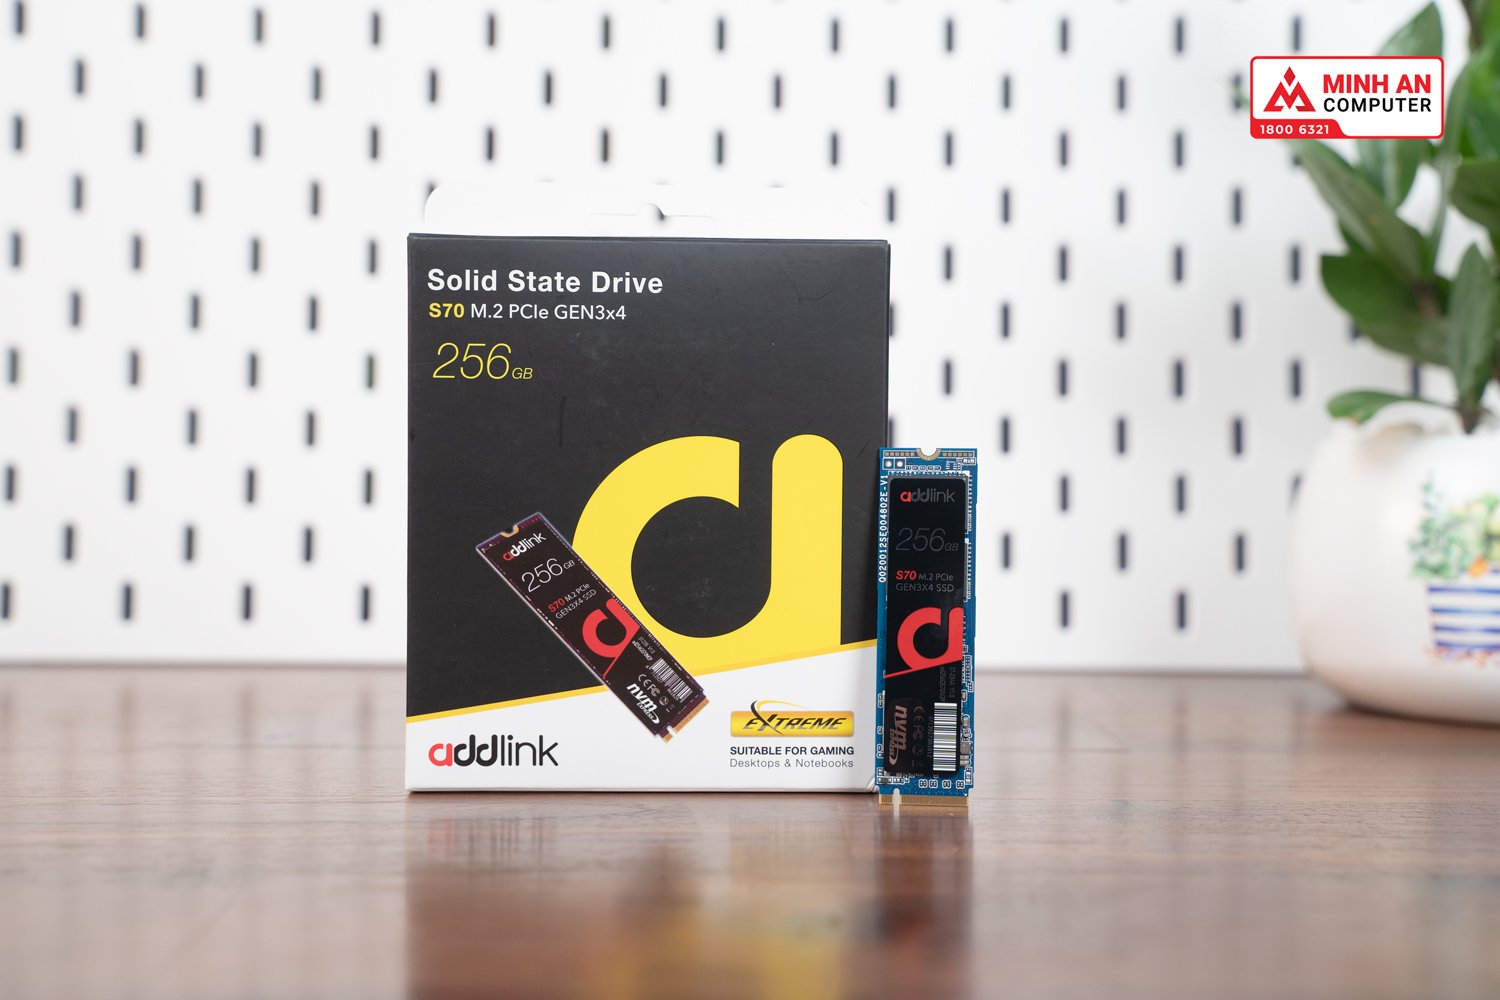 SSD ADDLINK S70 256GB